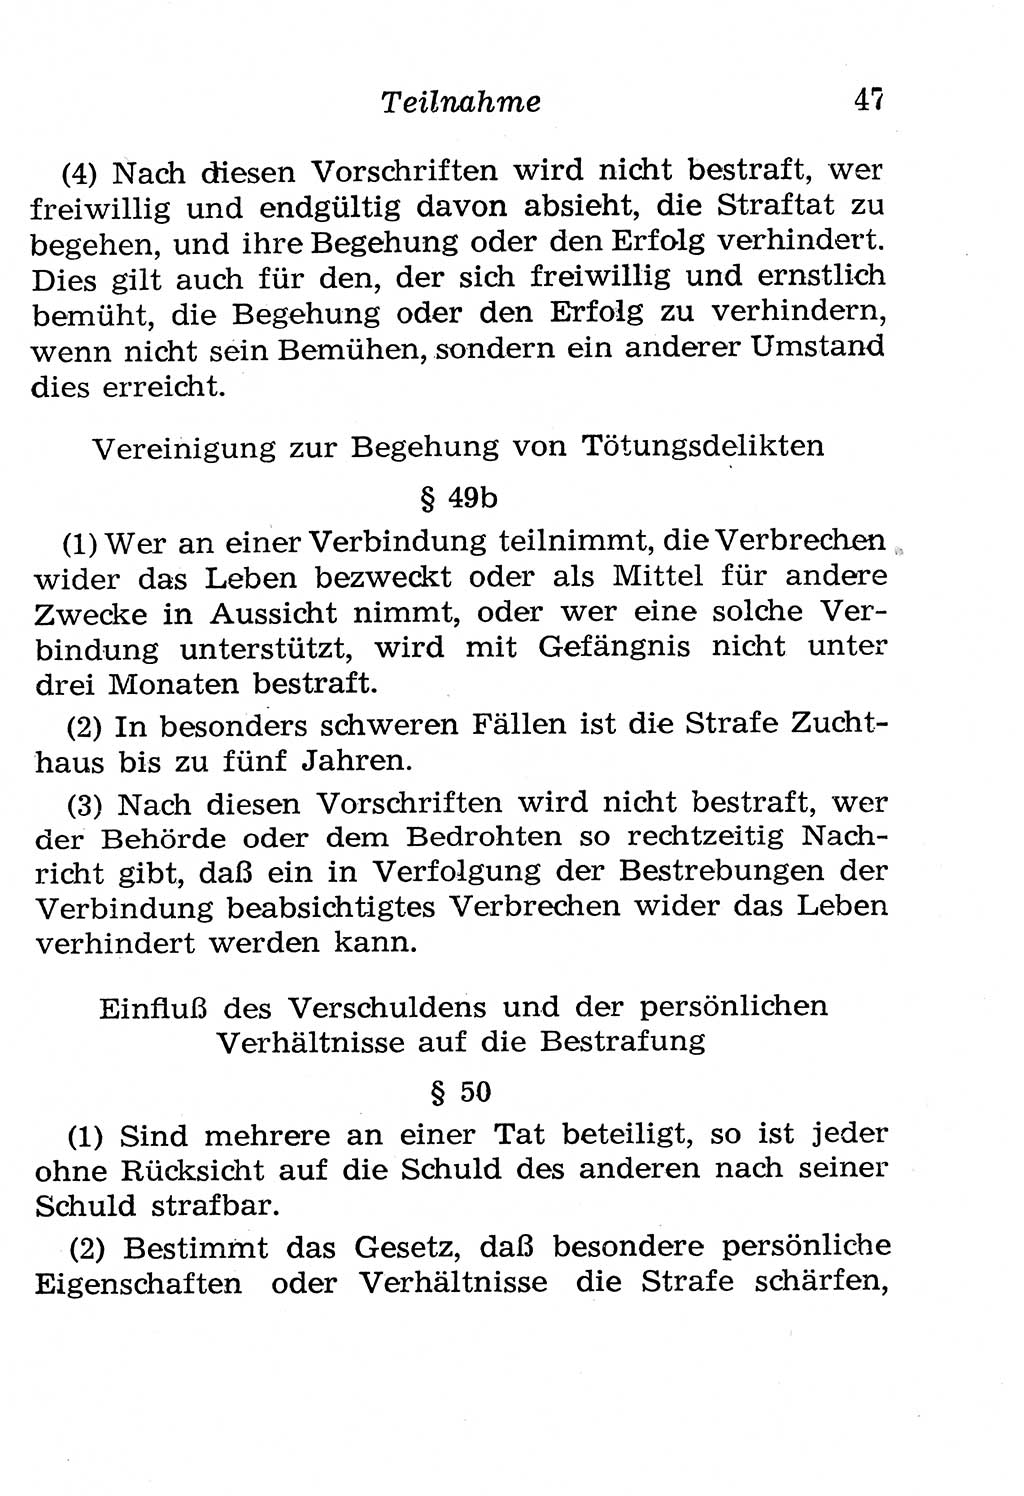 Strafgesetzbuch (StGB) und andere Strafgesetze [Deutsche Demokratische Republik (DDR)] 1958, Seite 47 (StGB Strafges. DDR 1958, S. 47)